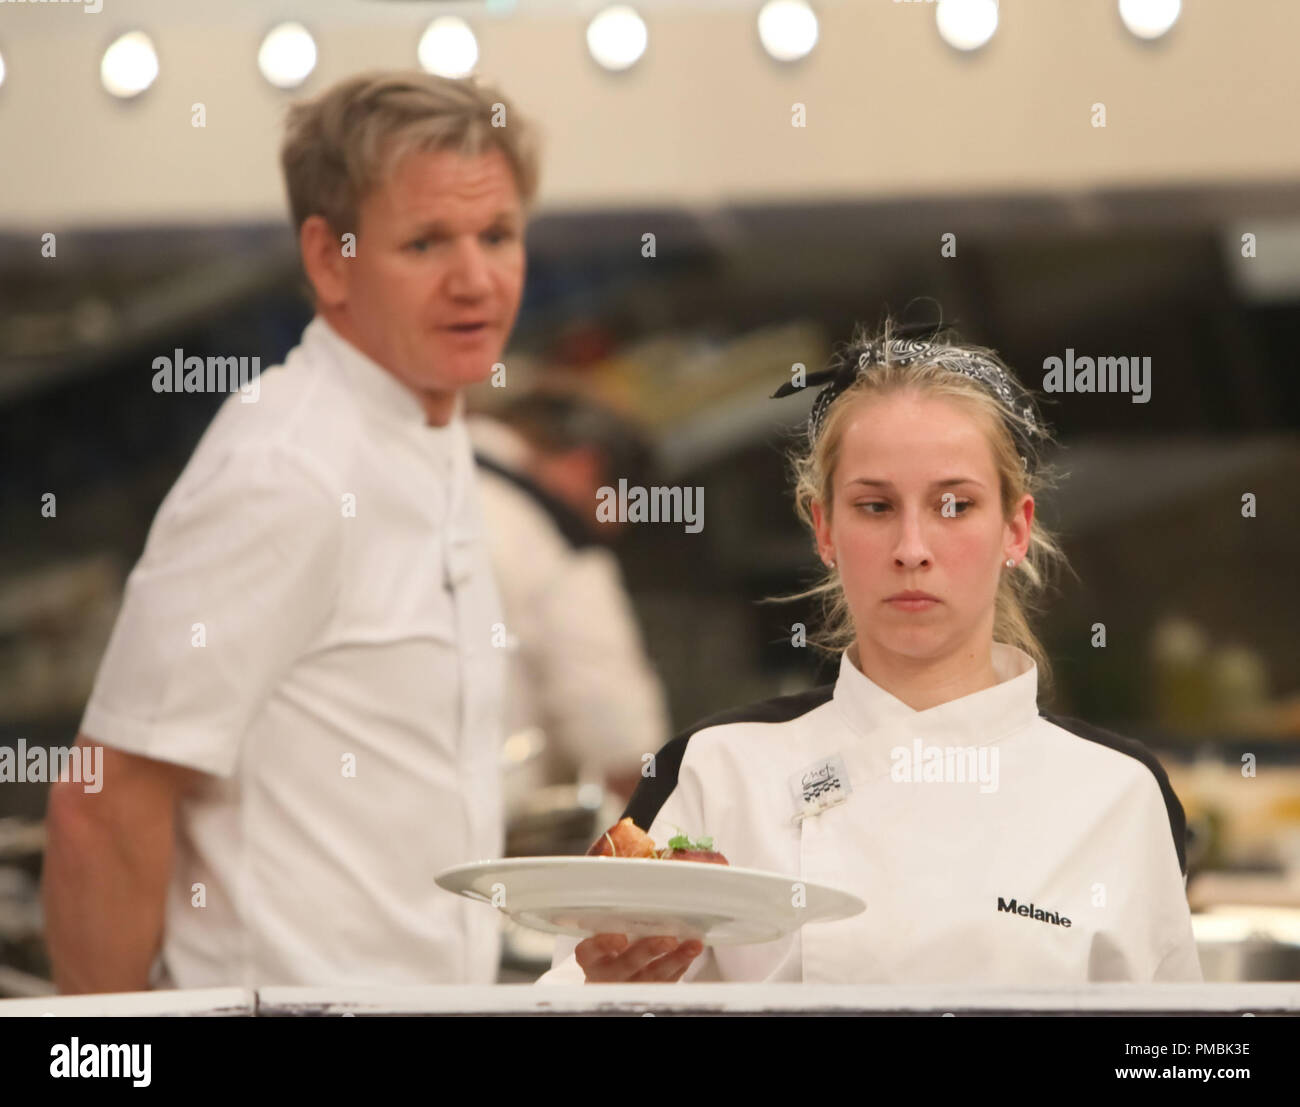 HELL'S KITCHEN: L-R: Chef Ramsay e rivale Melanie durante il servizio di cena in '4 chef competere' episodio di Hell's Kitchen Foto Stock